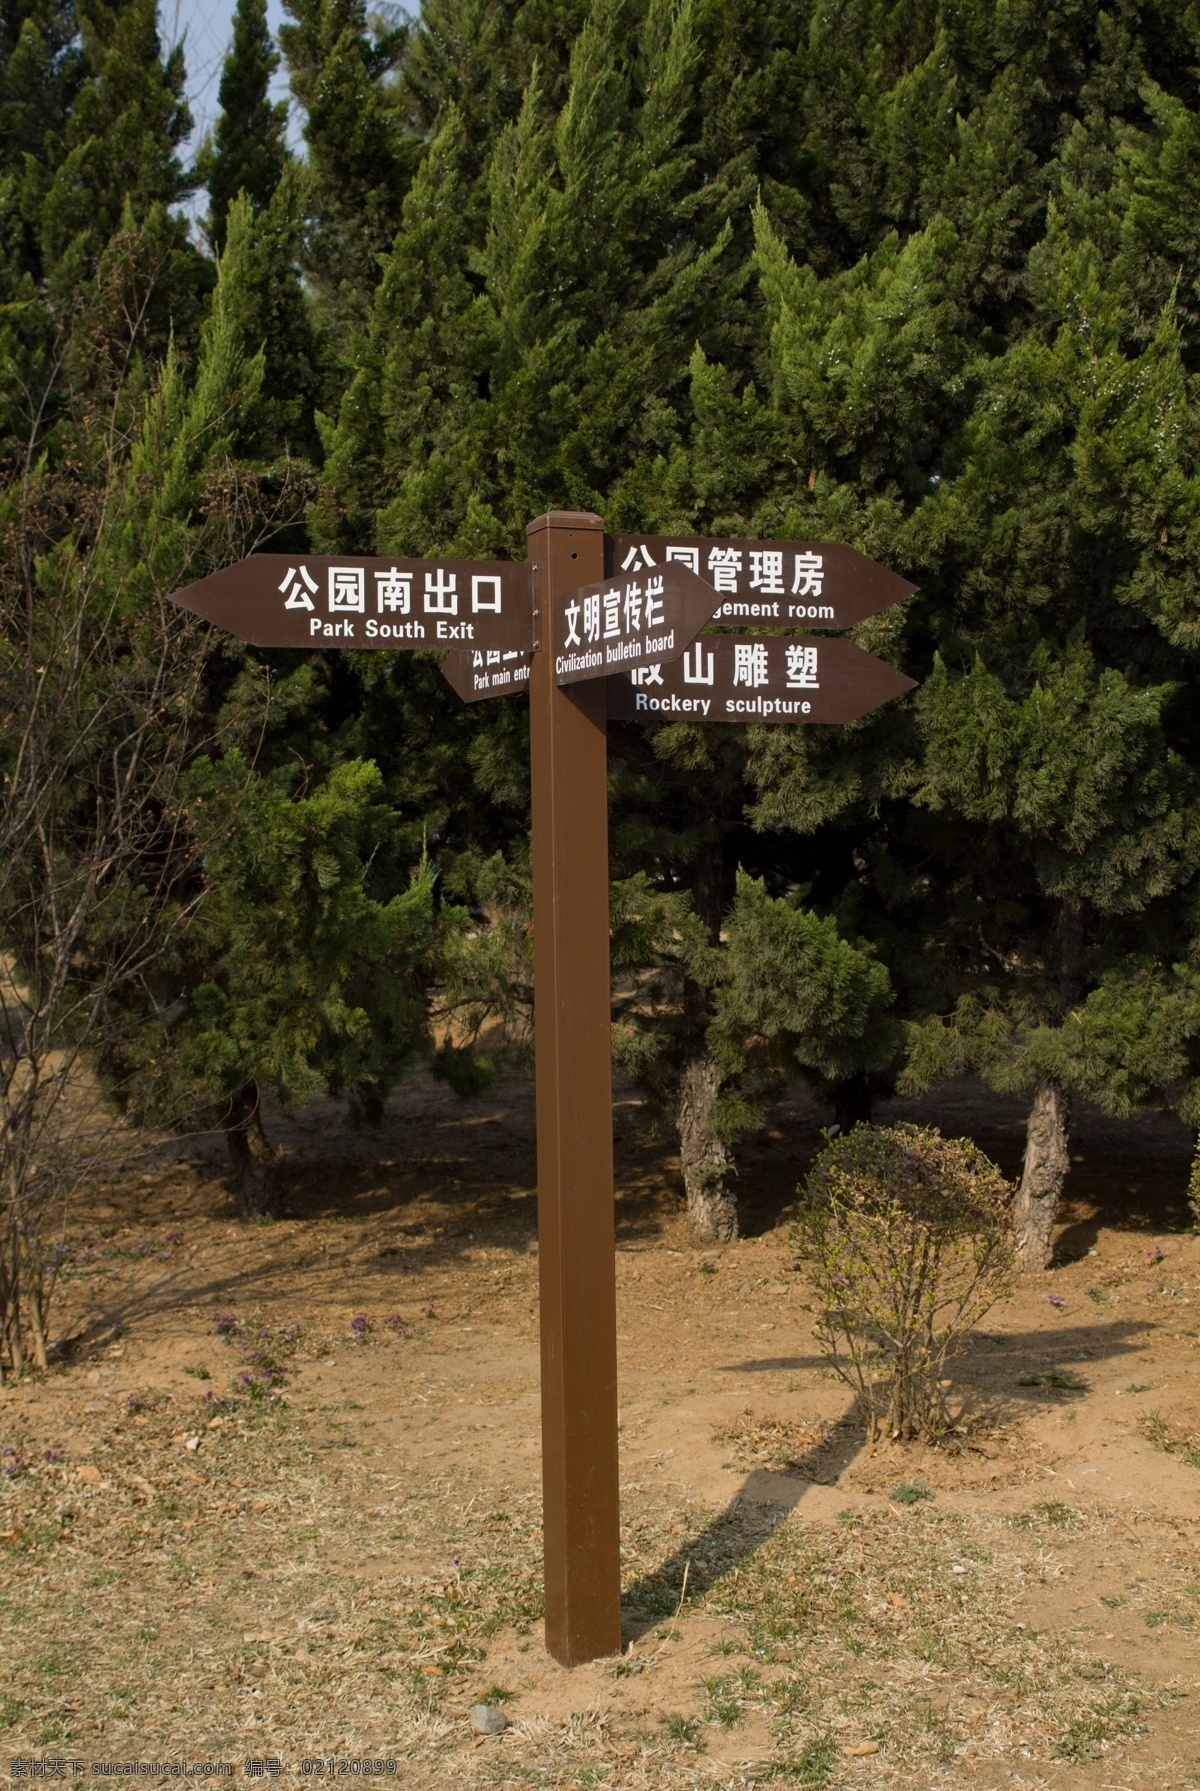 公园指示牌 公园 指示牌 标识 南山口 雕塑 植物 树木 管理房 旅游摄影 国内旅游